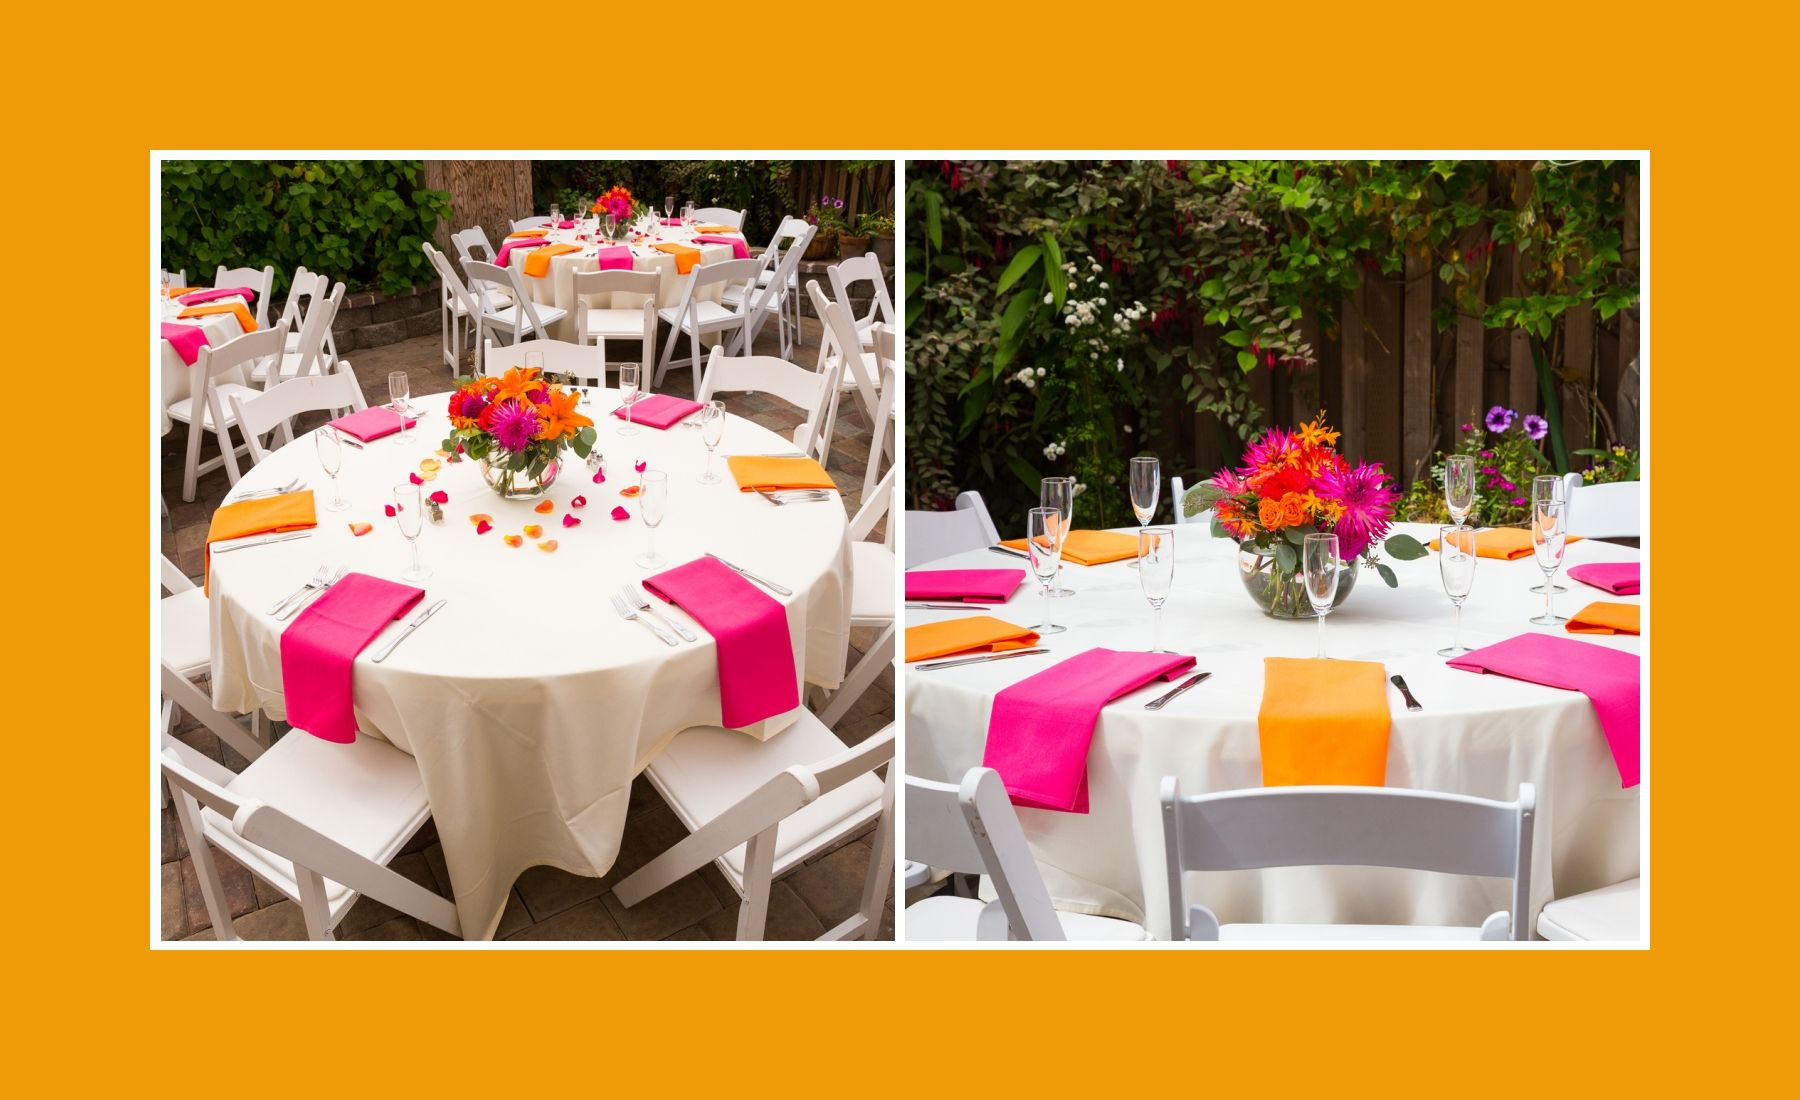 Tischdeko Hochzeit Runder Tisch
 Tischdeko runder Tisch Pink Orange